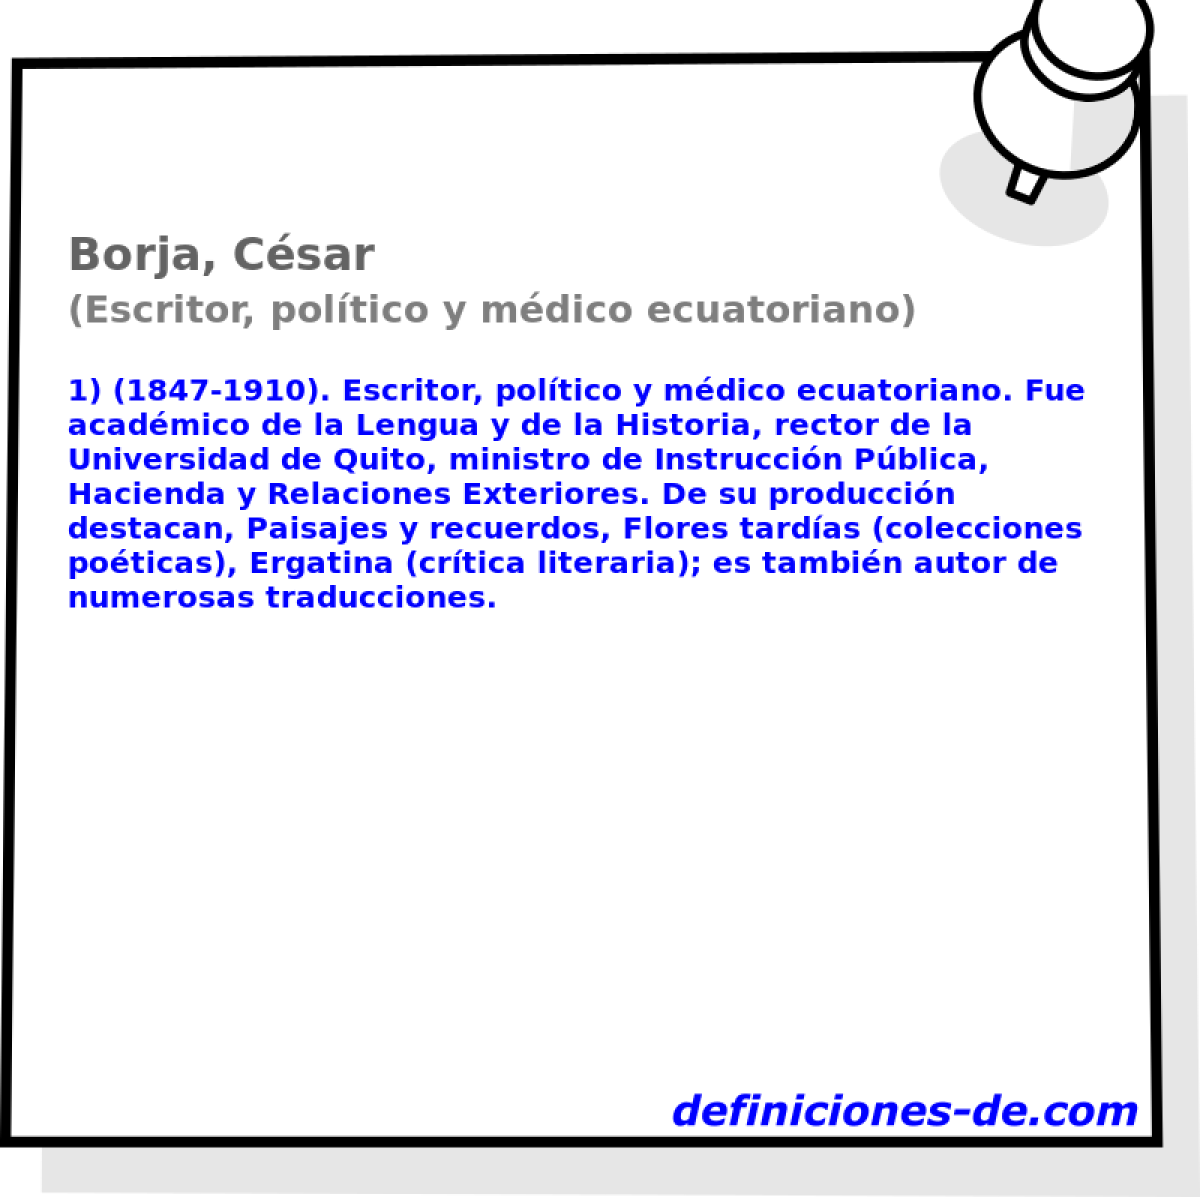 Borja, Csar (Escritor, poltico y mdico ecuatoriano)